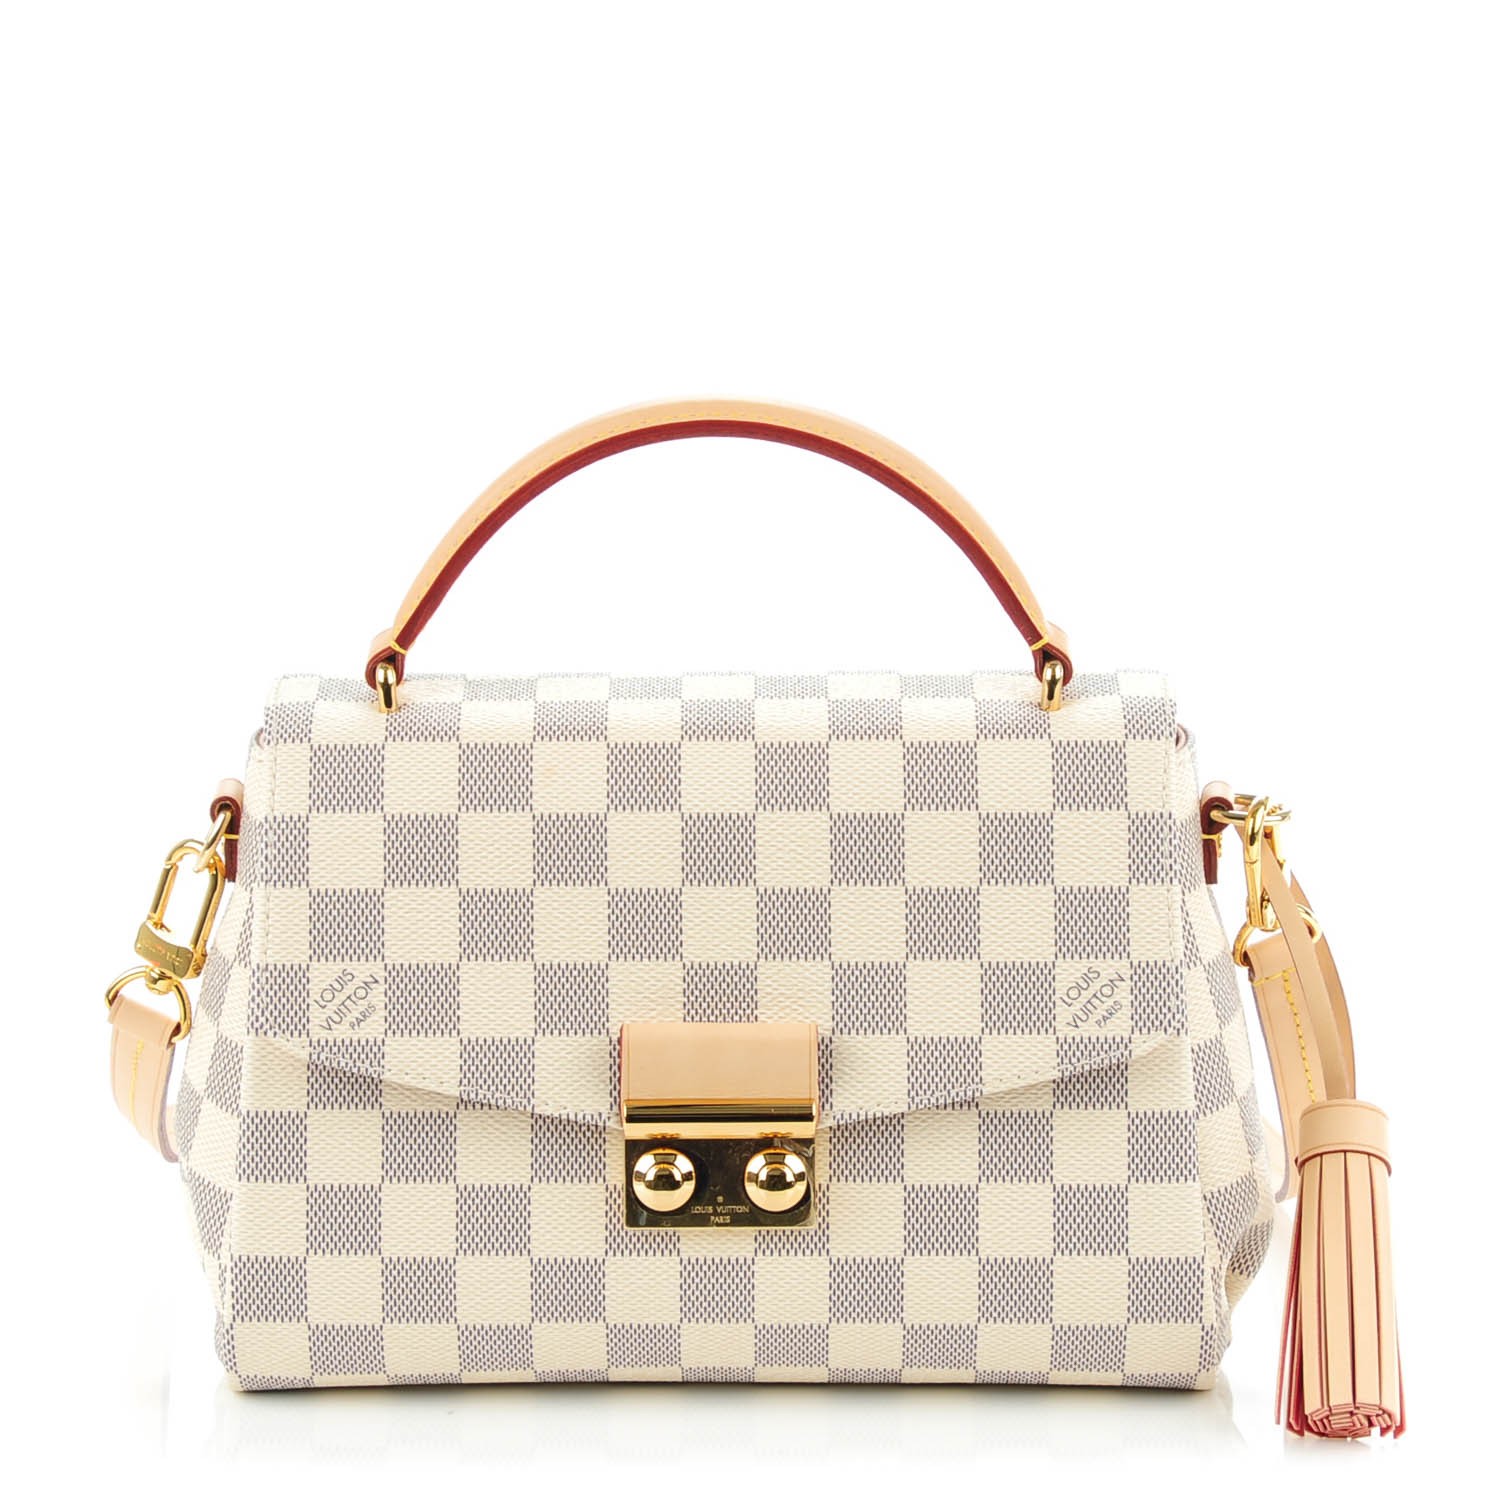 Louis Vuitton Croisette Damier Ebene Handbag Unboxing and Review 